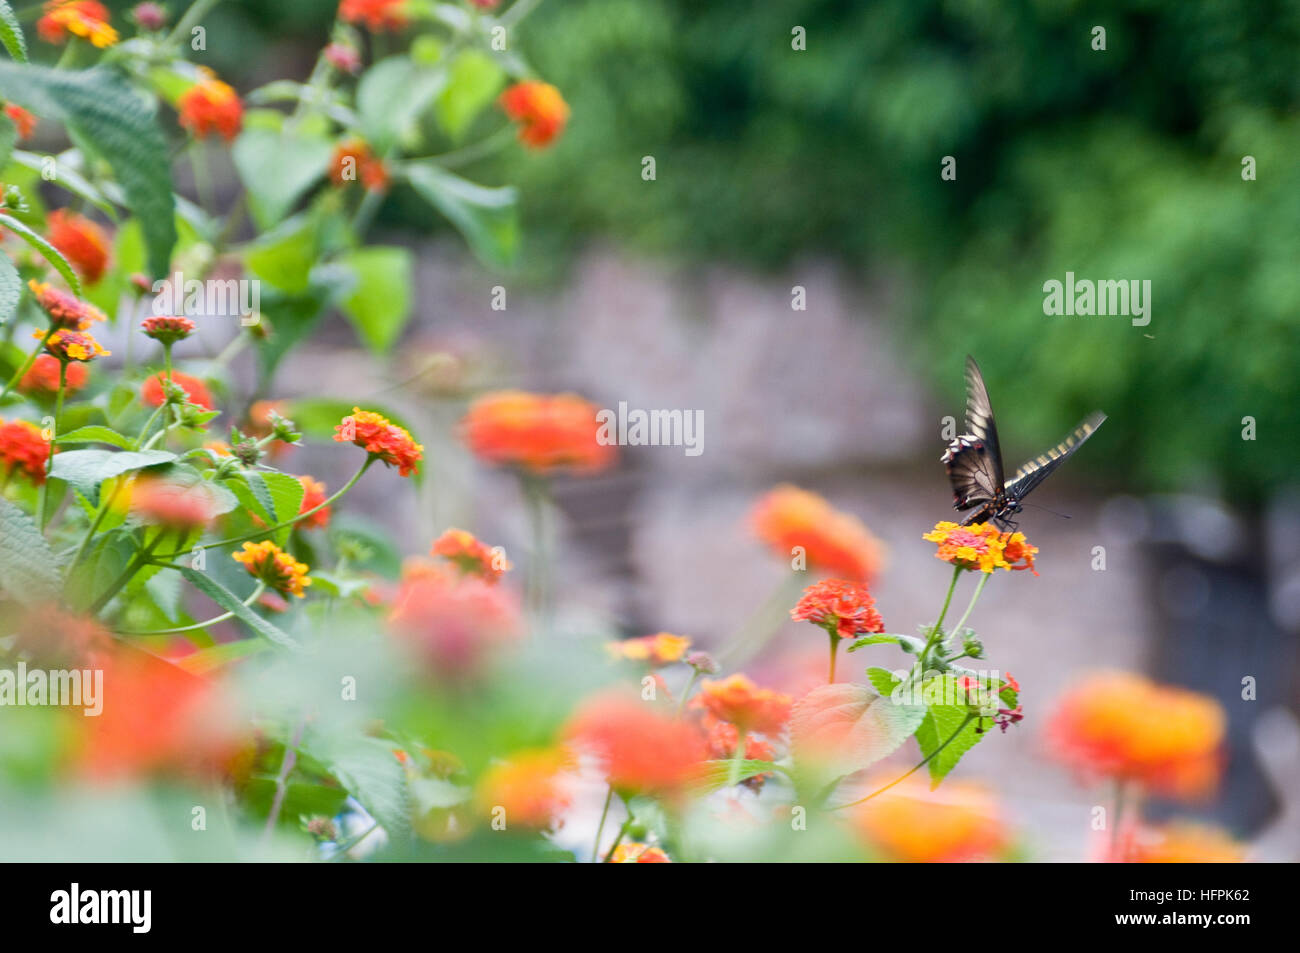 Mariposa sobre una flor de naranja, en un jardín. Foto de stock